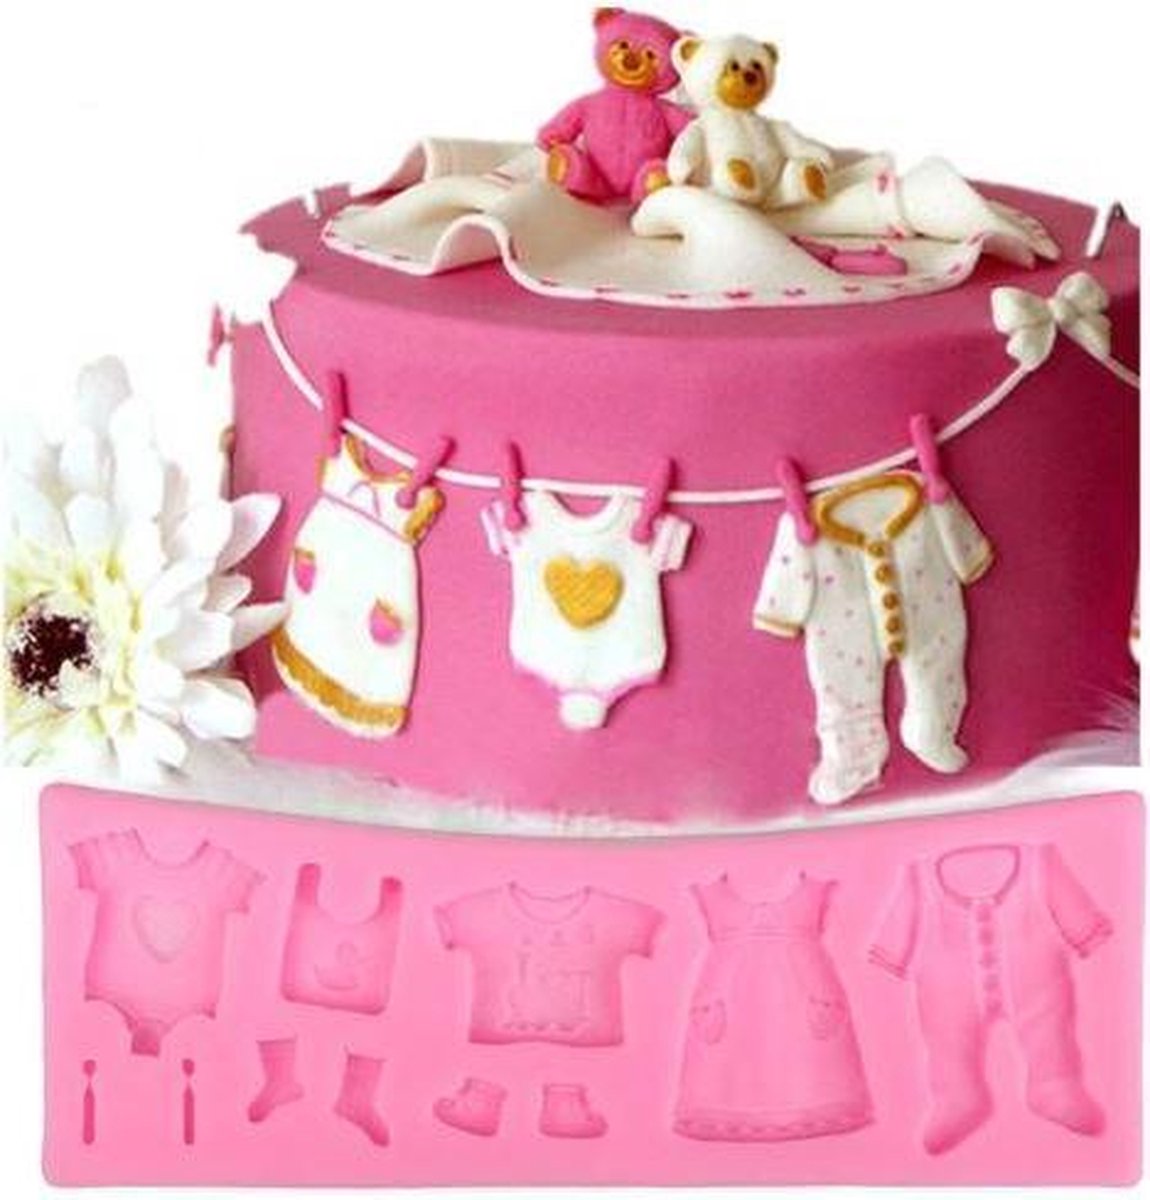 Fondant Baby kleding Mal - Siliconen Baby versiering vorm - Fondant / Marsepein / Chocolade / Zeep - Voor babyshower decoratie van taart, cupcakes en cake